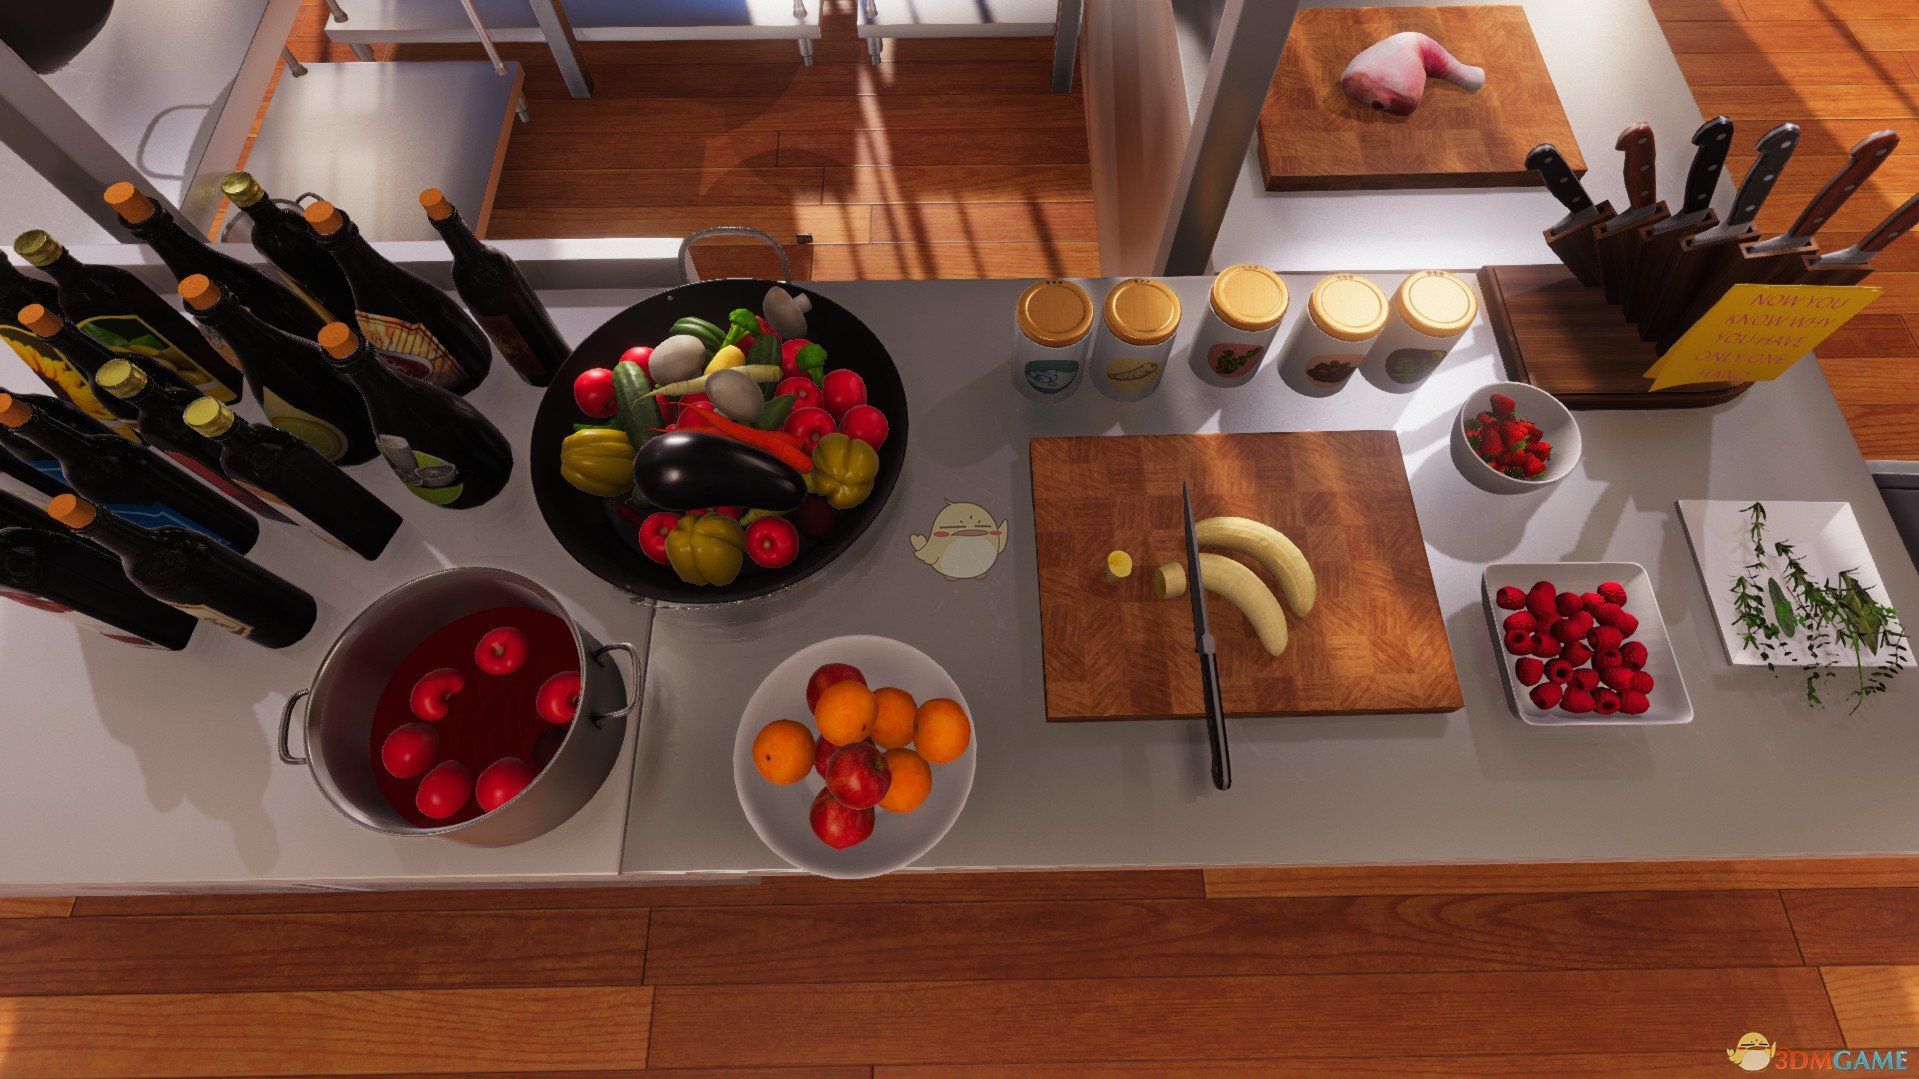 《料理模擬器》三文魚配蘆筍的檸檬汁使用方法分享